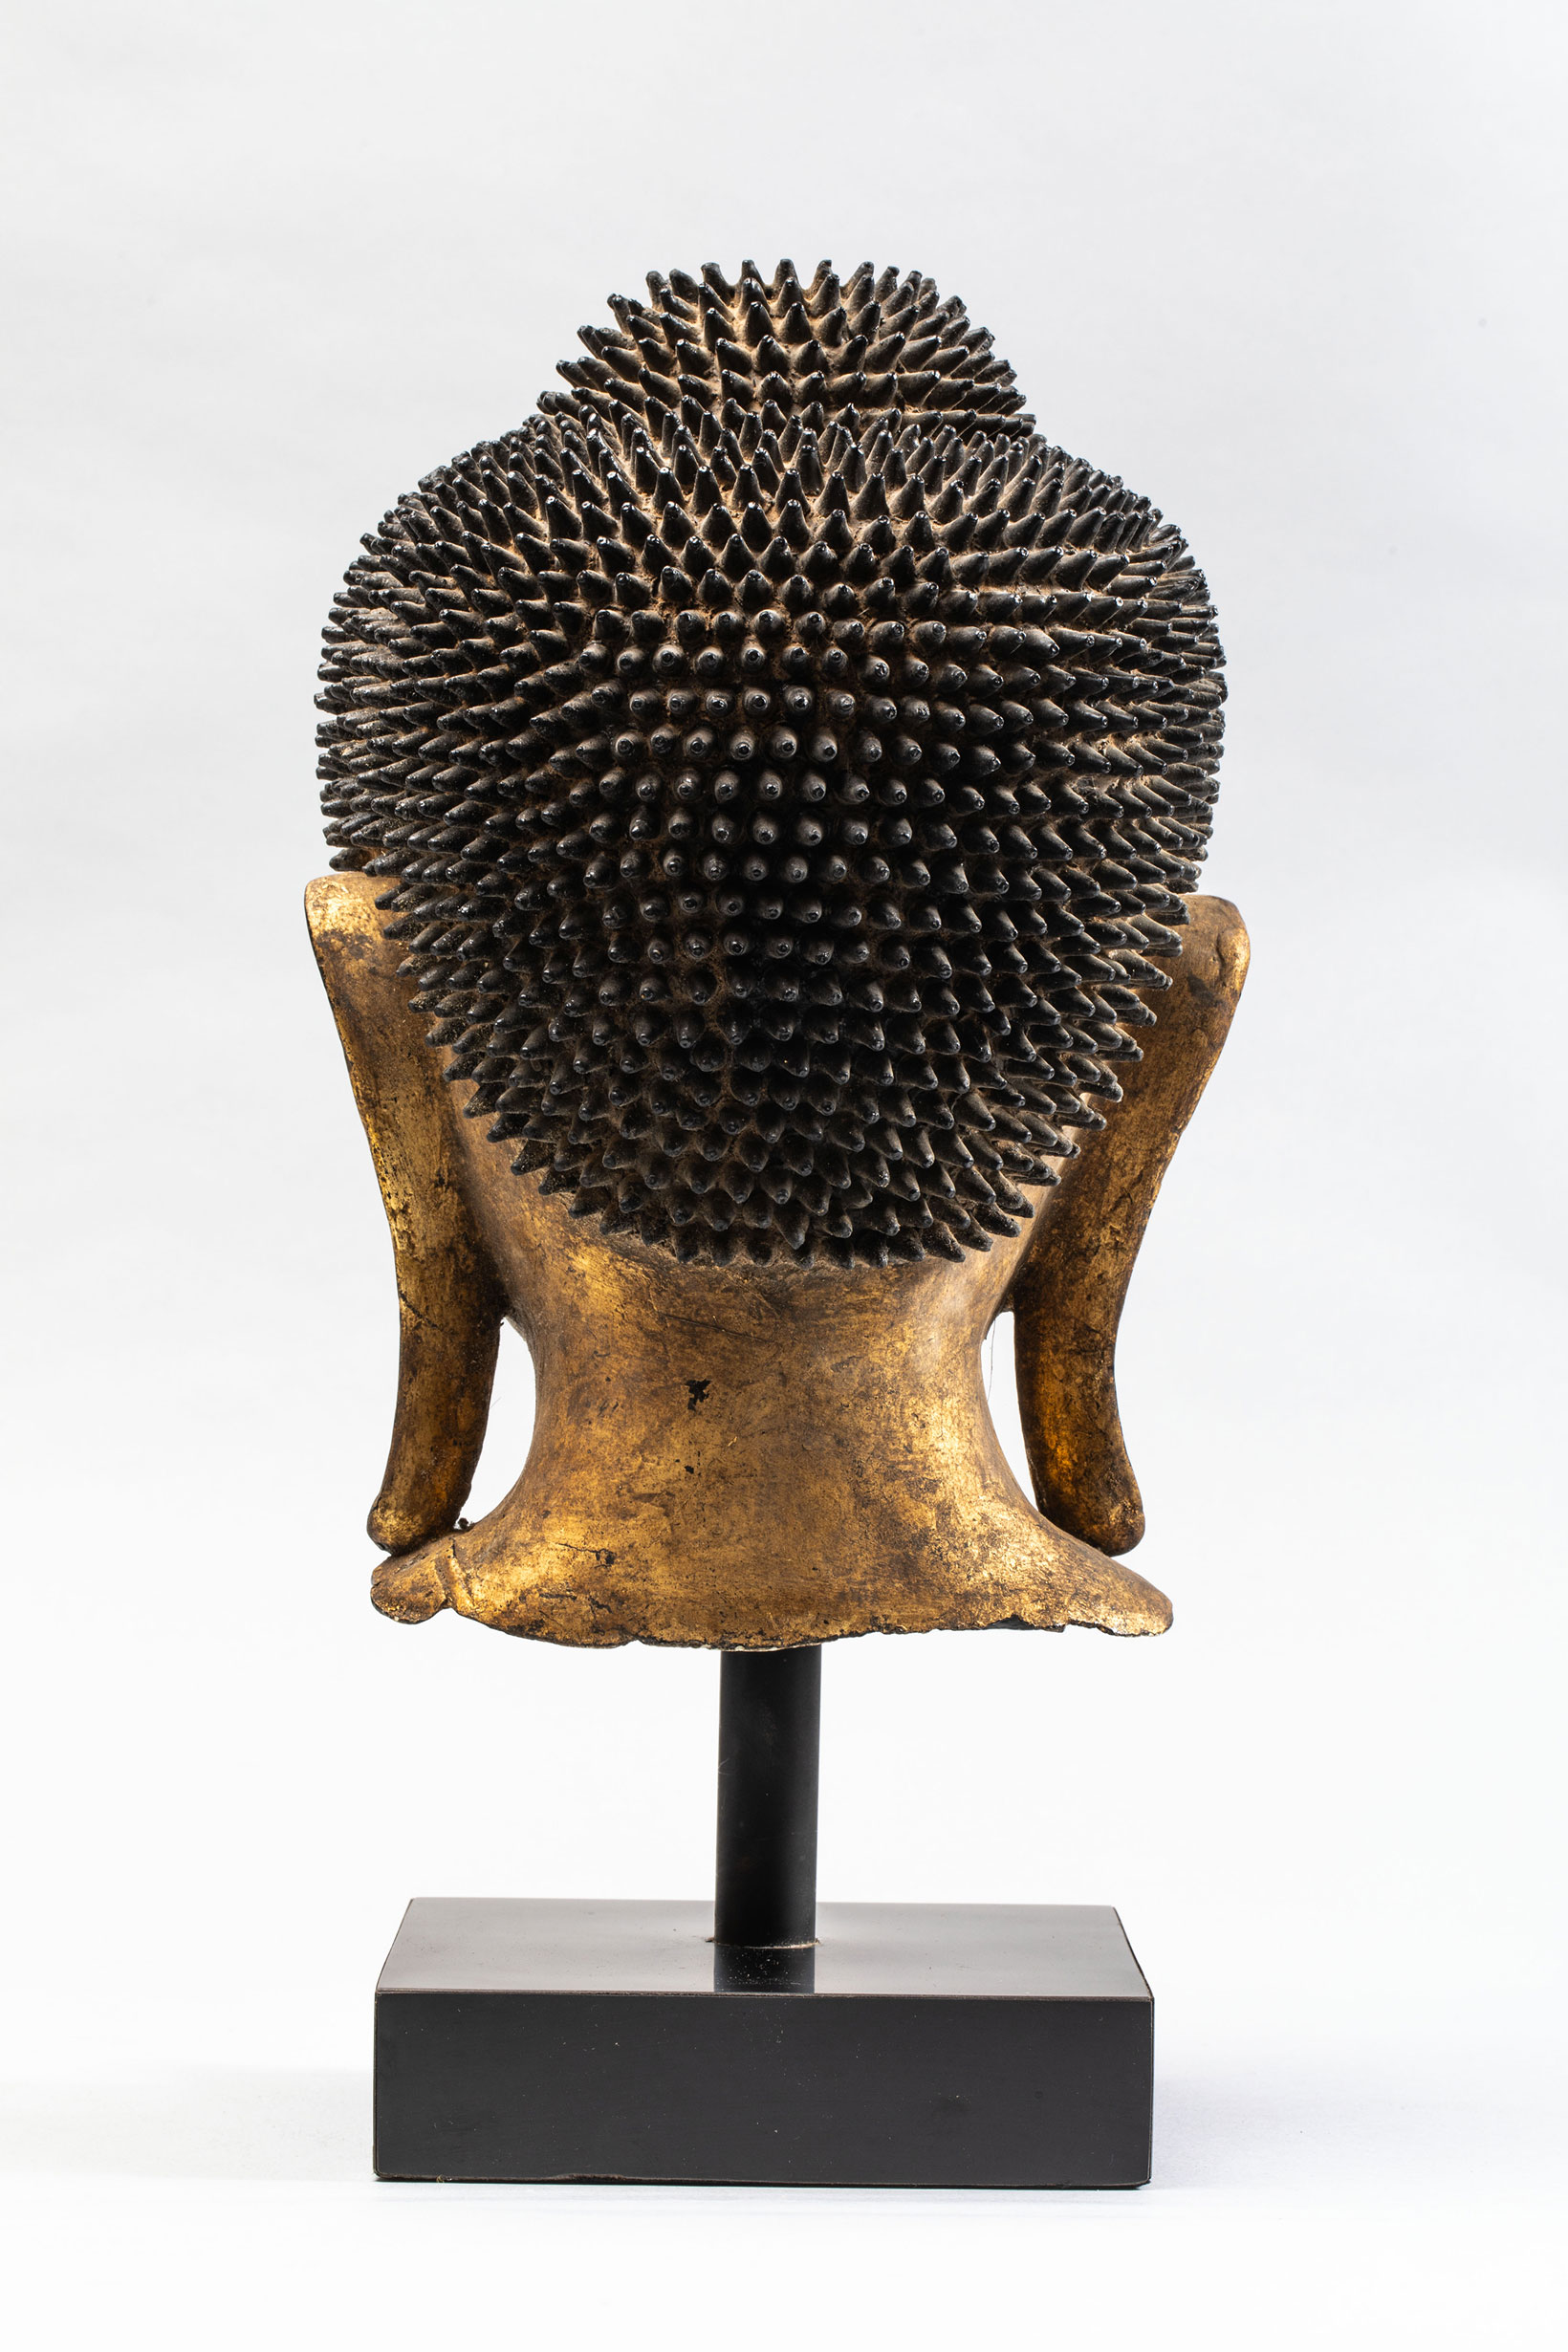 Tête de Buddha coiffée de fines bouclettes hérissées surmontée de la protubérance crânienne ushnisha - Image 4 of 4